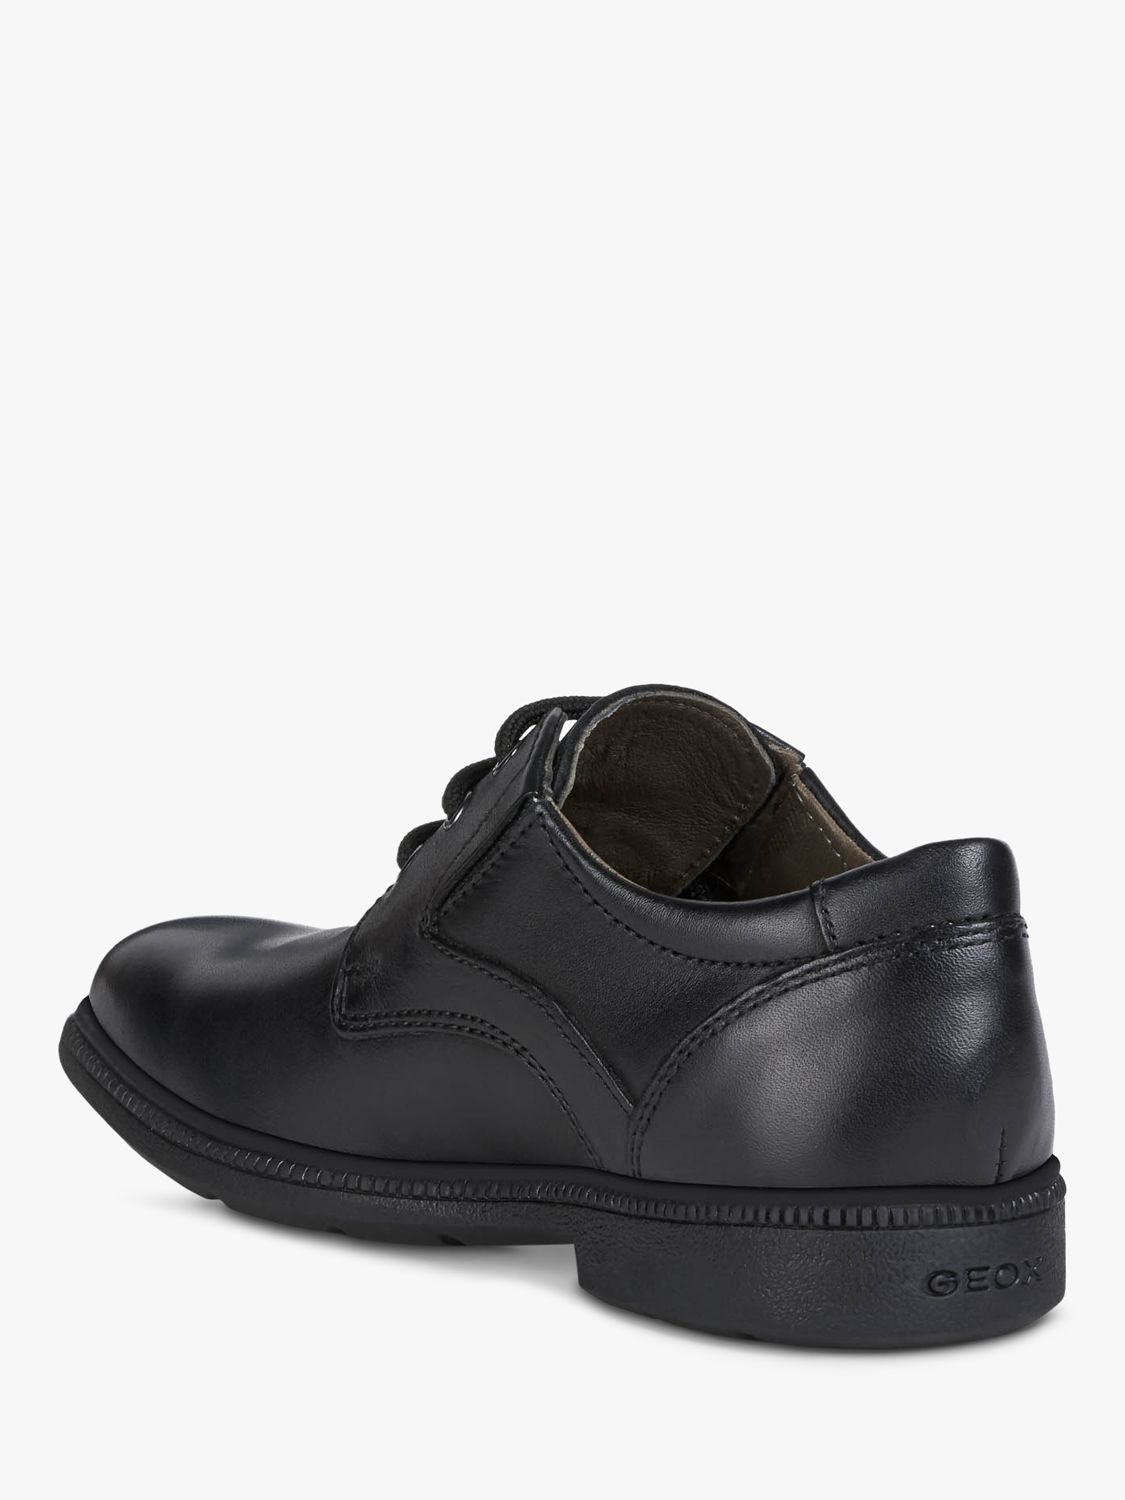 Buy Geox Kids' Federico School Shoes, Black Online at johnlewis.com